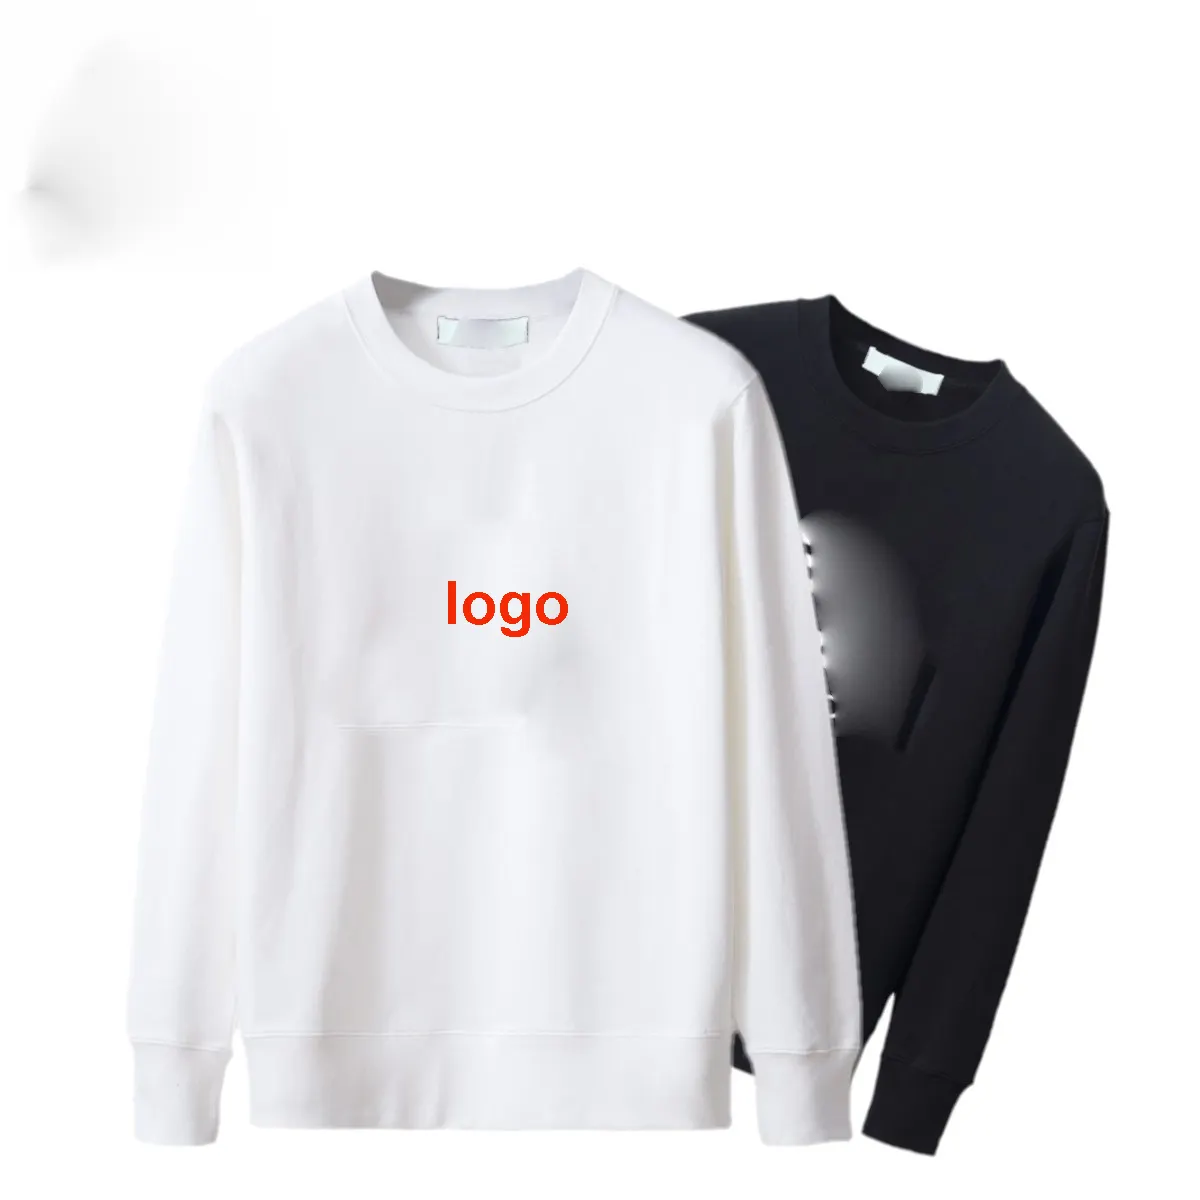 Droma inspired tasarımcı 1 in 1 yüksek kalite ünlü logo baskı uzun kollu artı boyutu kazak 100% pamuk kapüşonlu